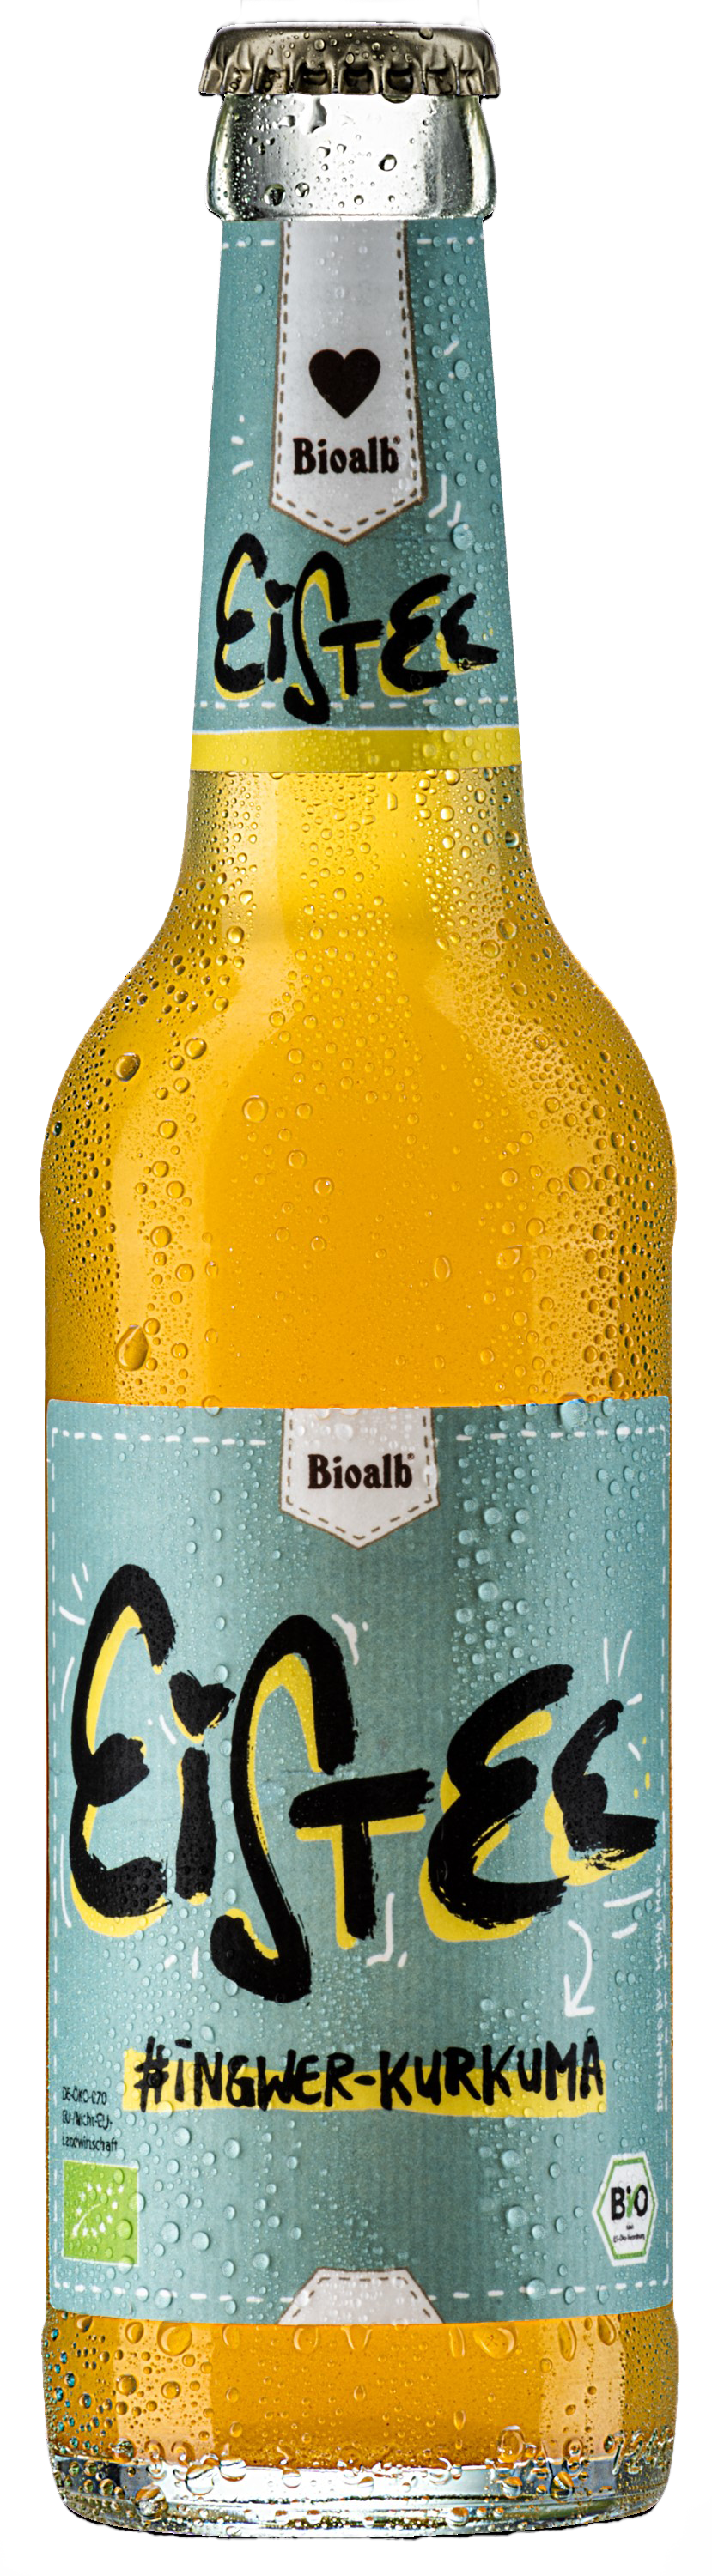 Bioalb Bio-Eistee Ingwer-Kurkuma, Bio-Eistee, Brauerei Zoller-Hof